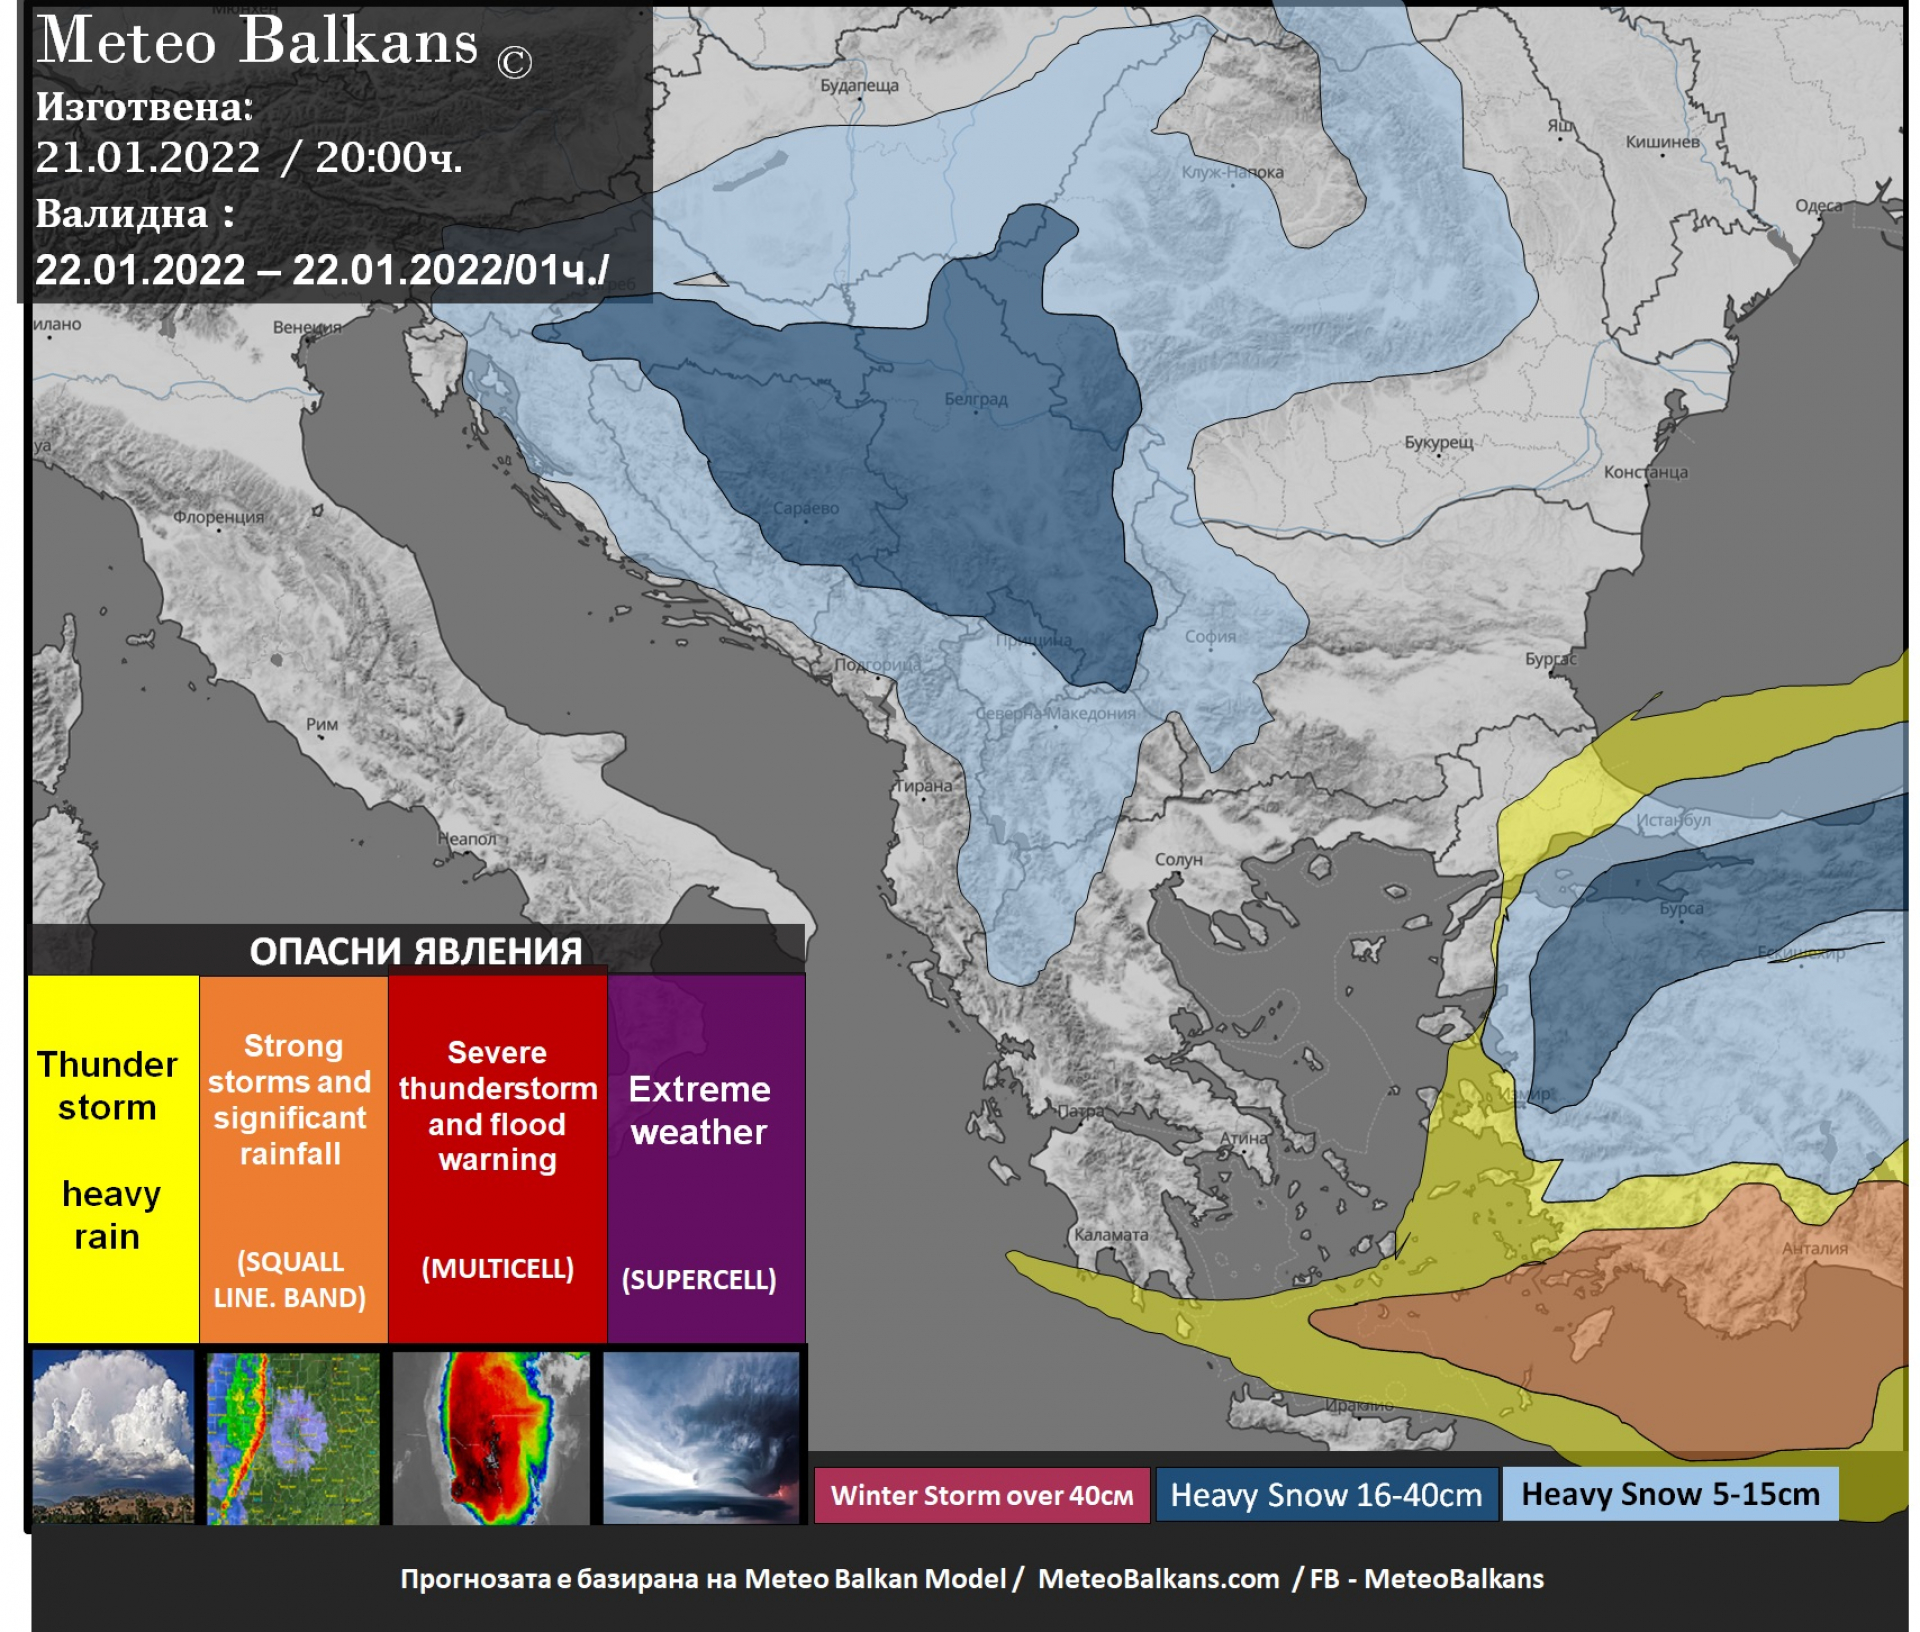 Meteo Balkans алармира: Ледена епоха сковава България в събота! Сателитни СНИМКИ